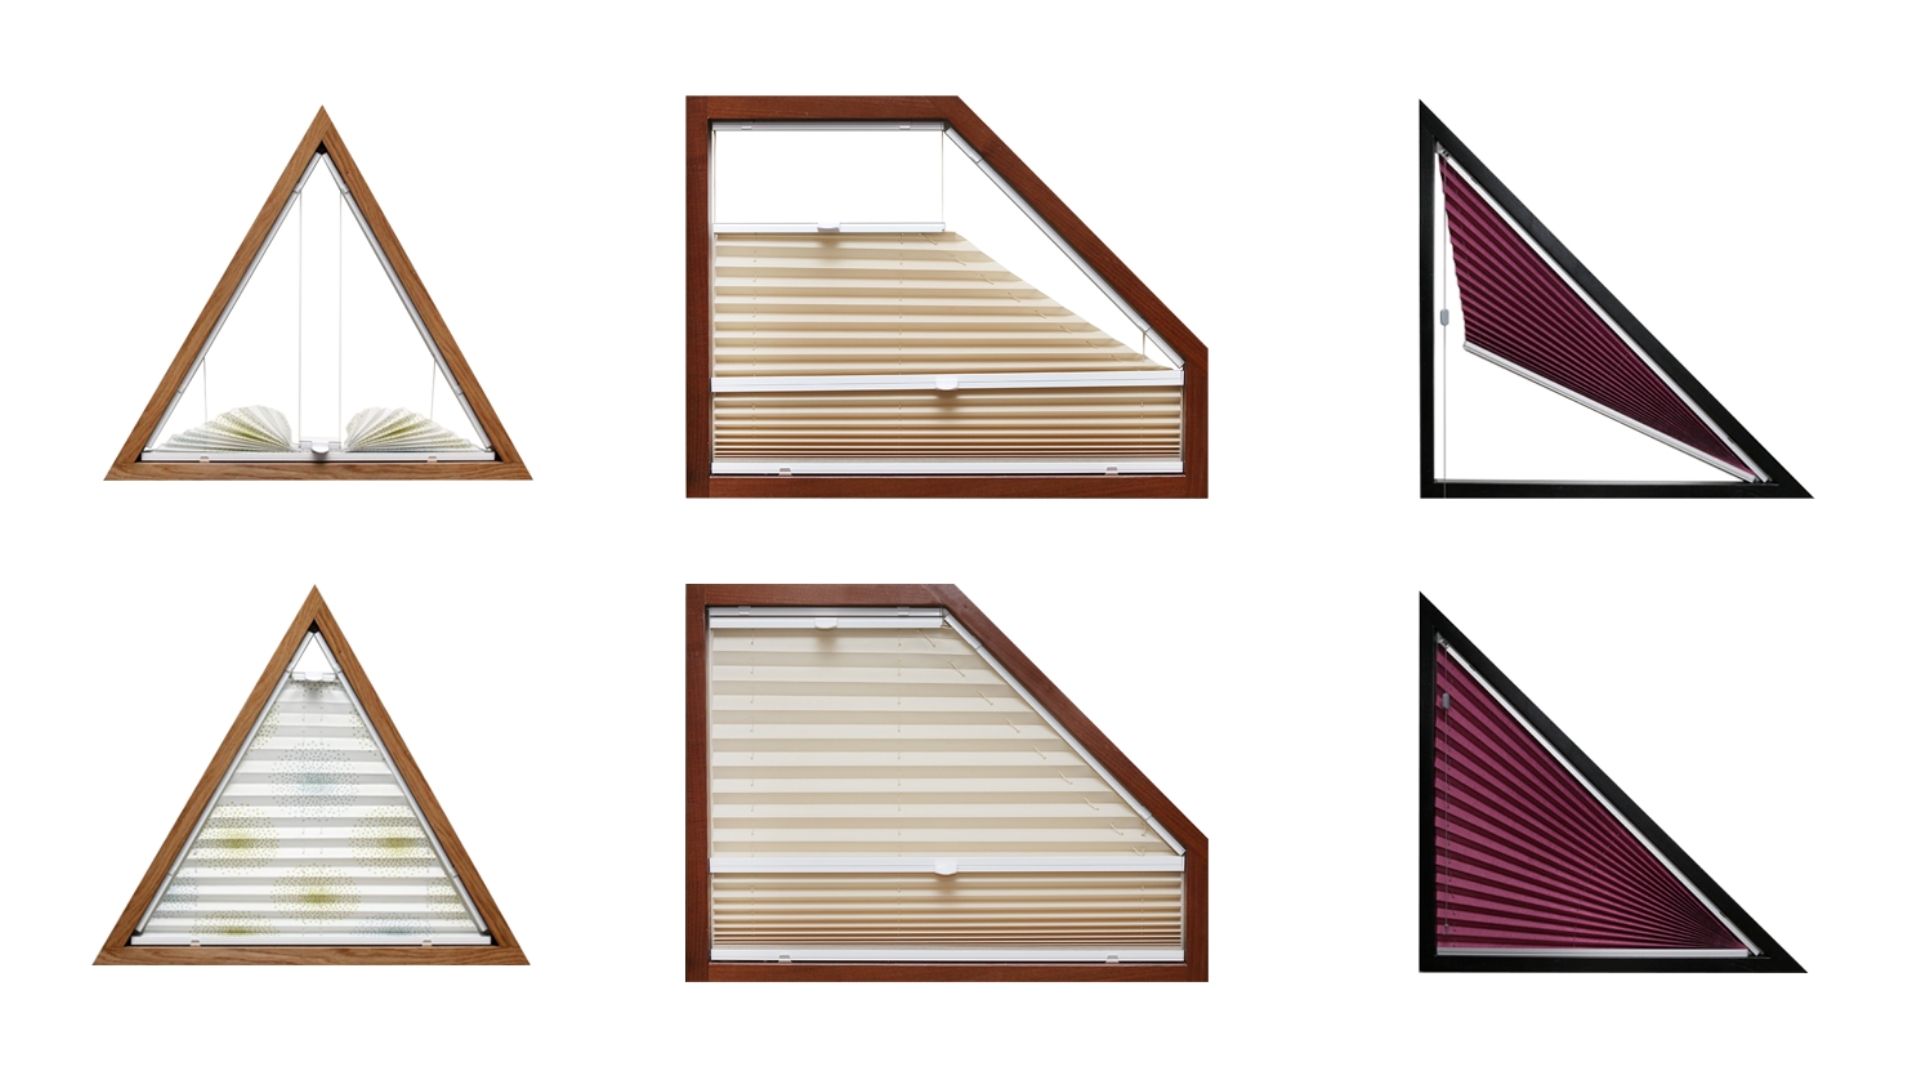 plise-zavese-za-okna-nepravilnih-oblik-trikotno-okno-veckotno-okno